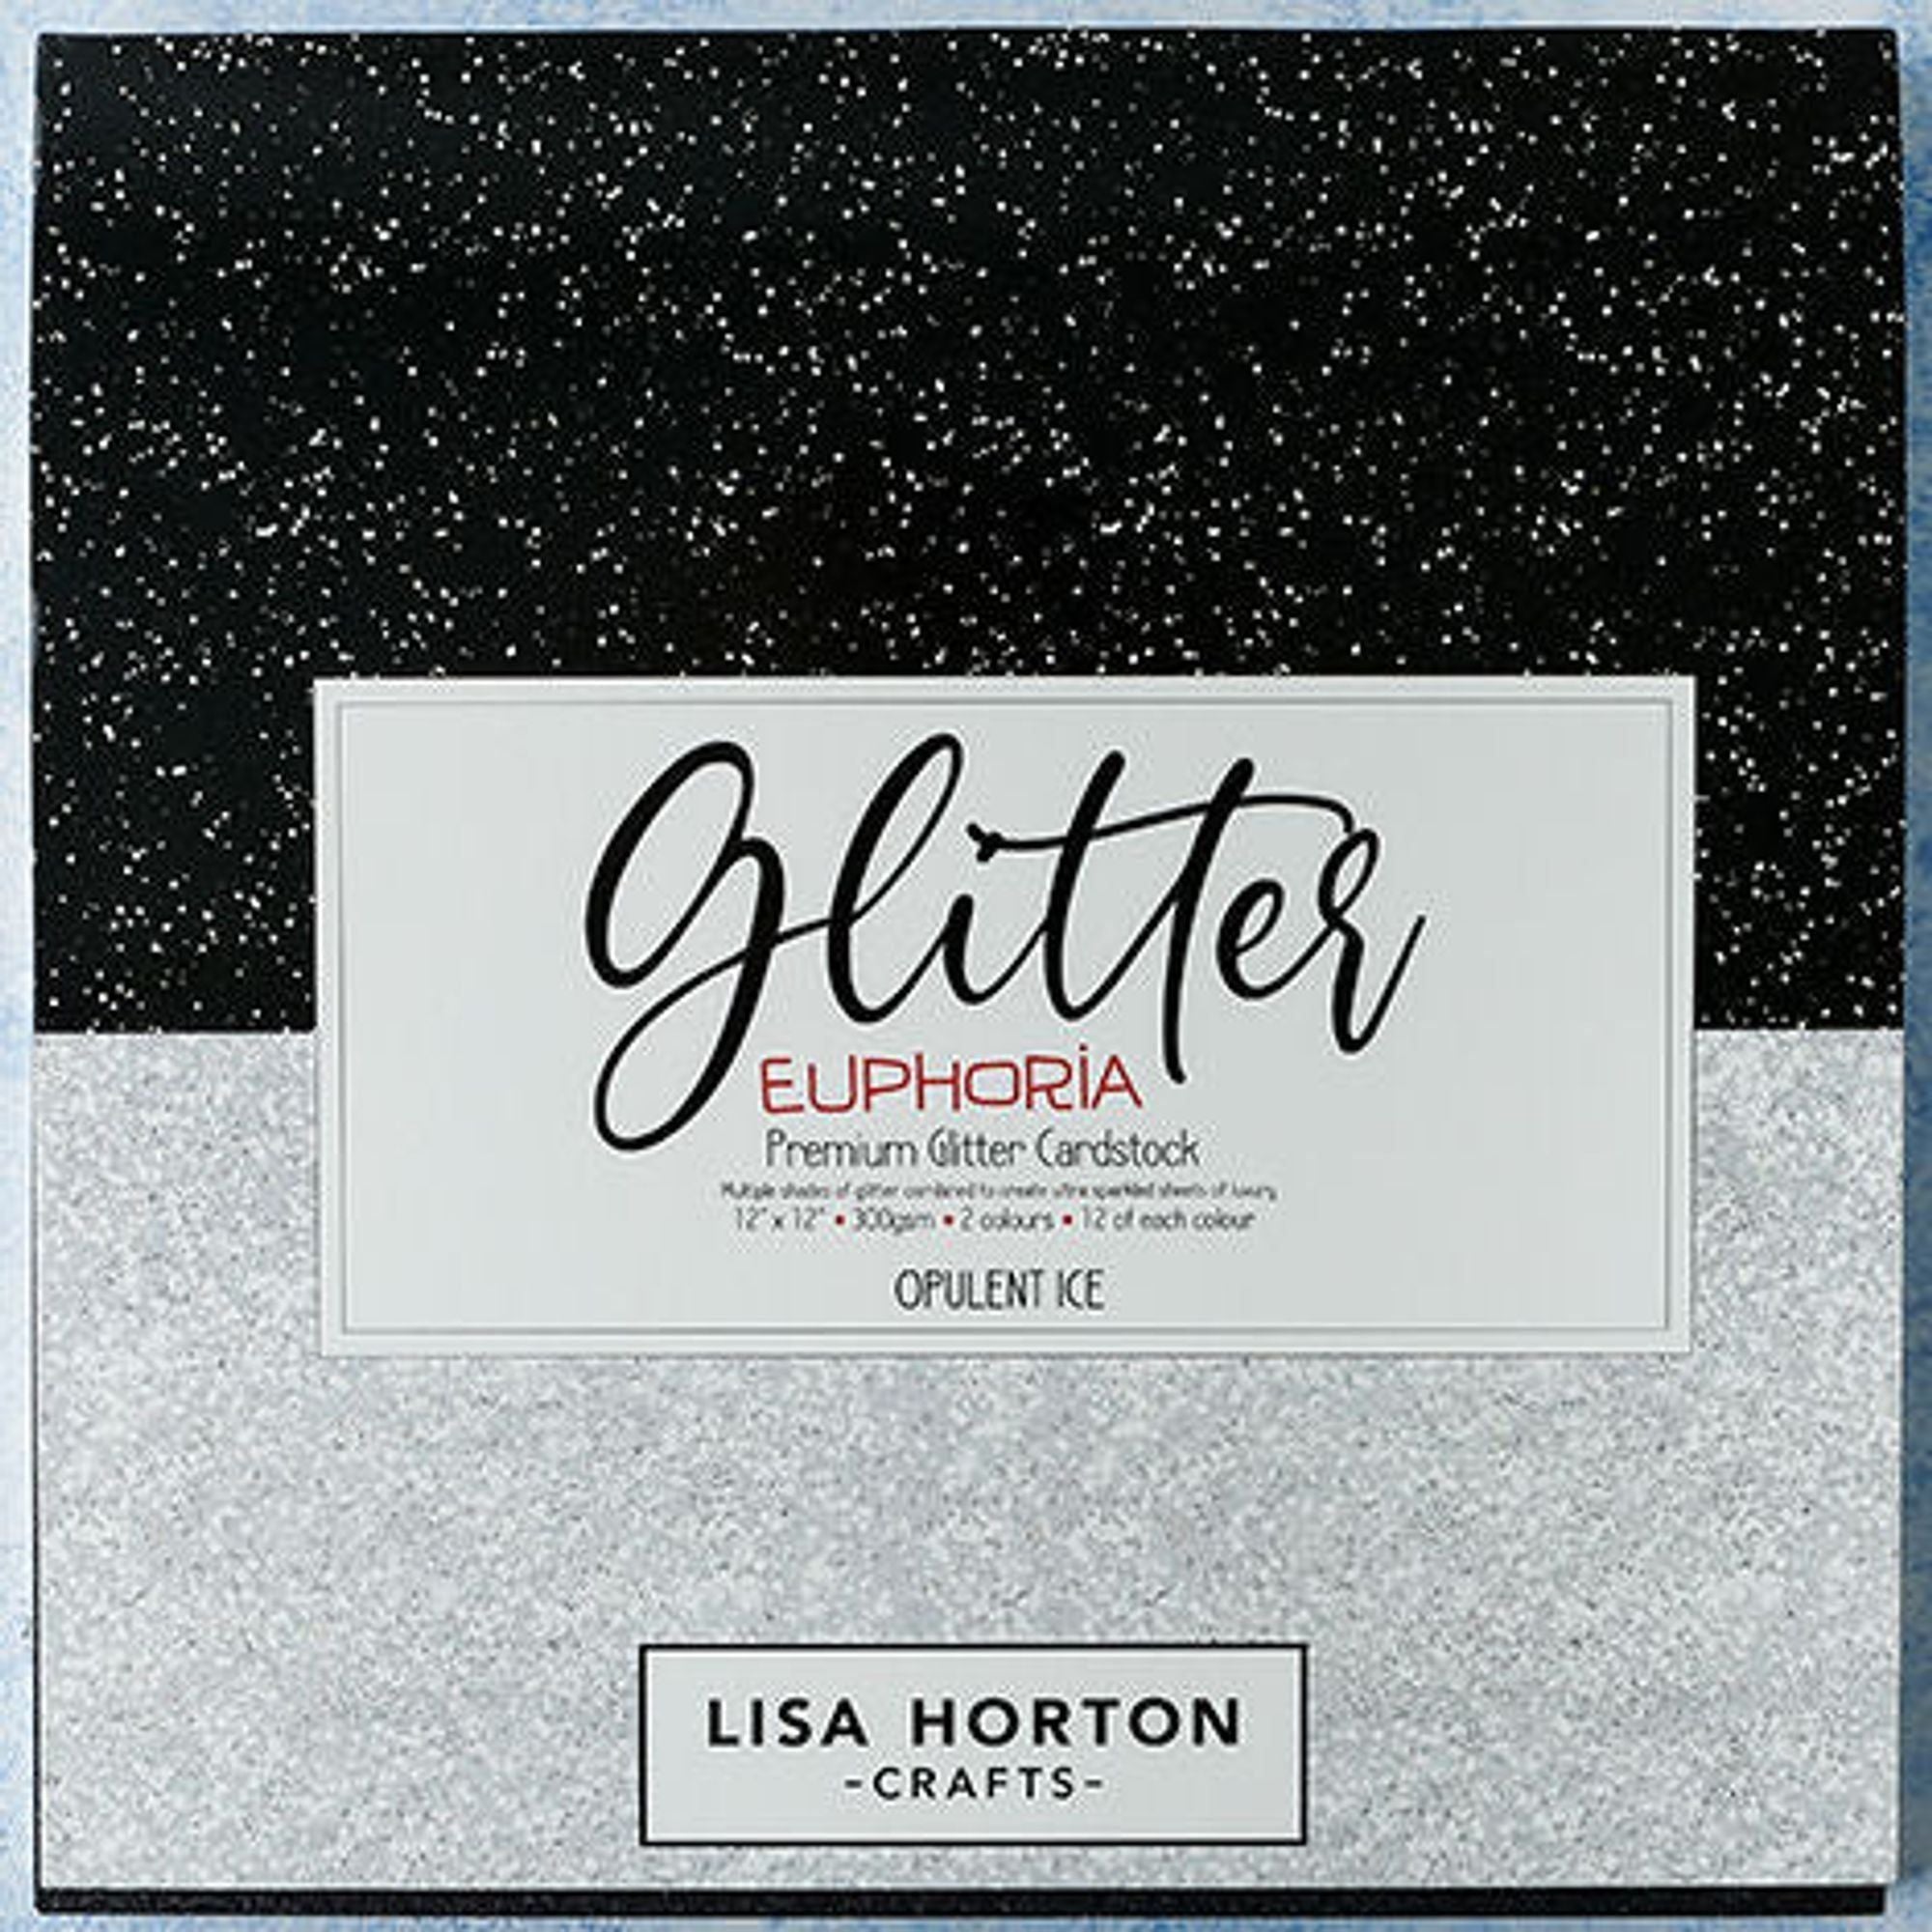 Opulent Ice 12 X 12 Glitter Euphoria Premium Cardstock - Black And White